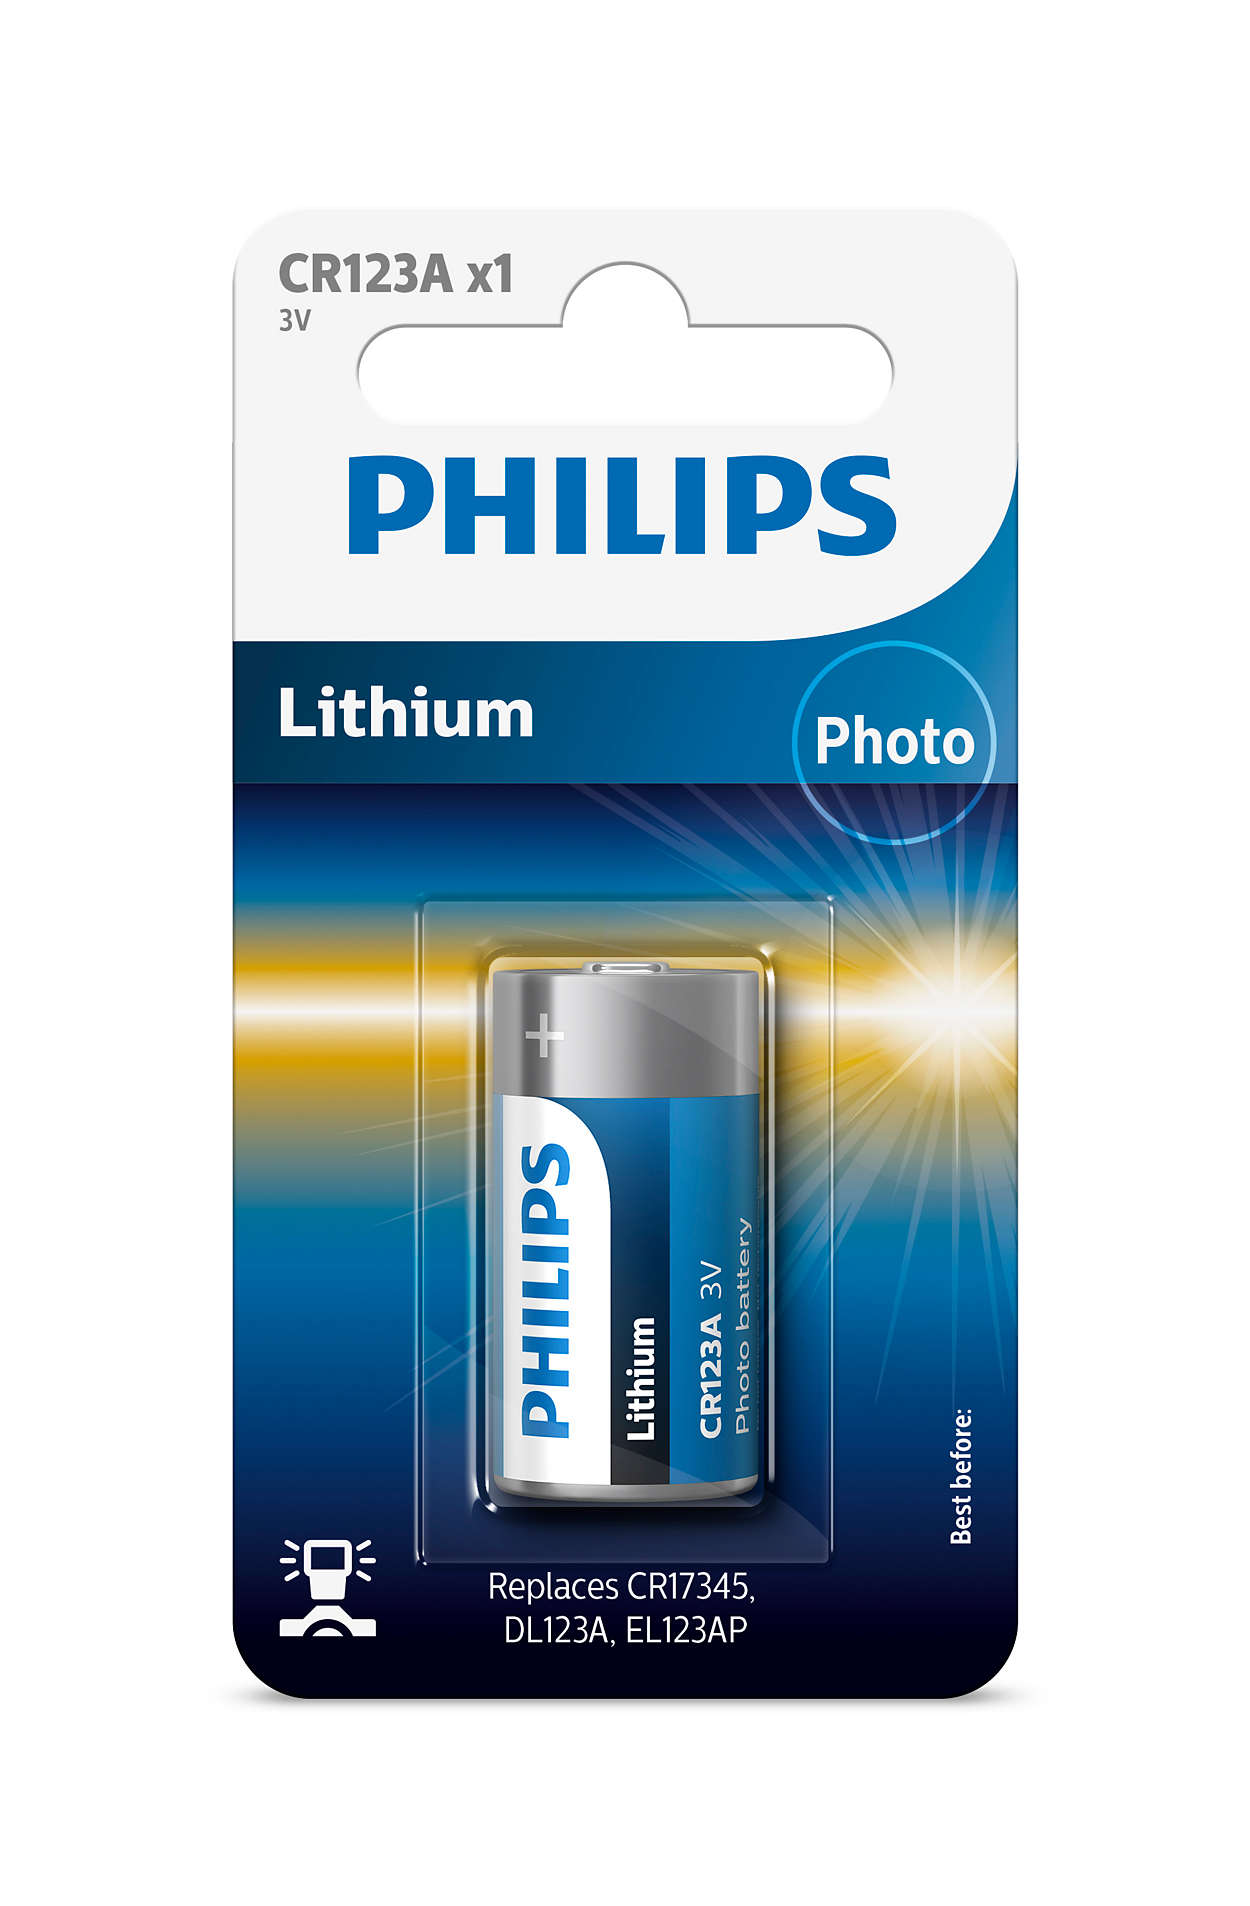 Bästa litiumkvaliteten för din kamera